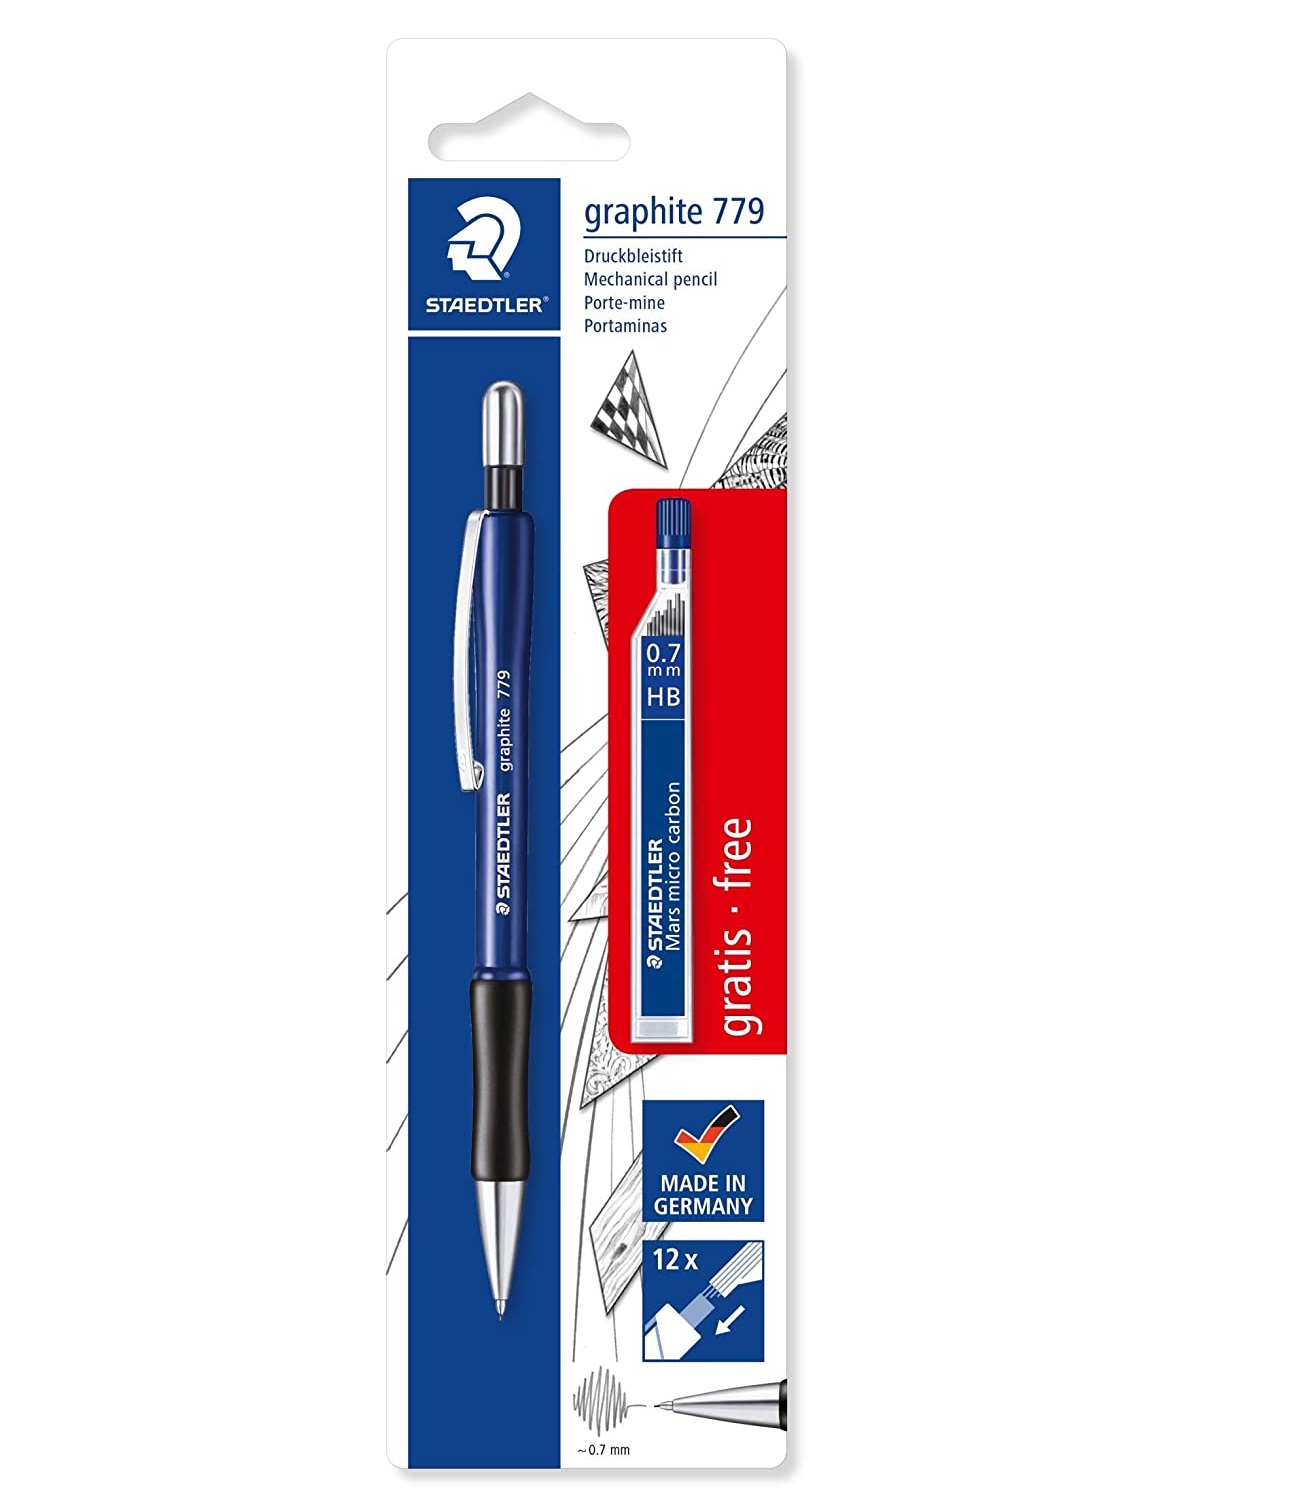 Staedtler Graphite 779 0.7mm Mechanical Pencil - color variations (Black/Blue)